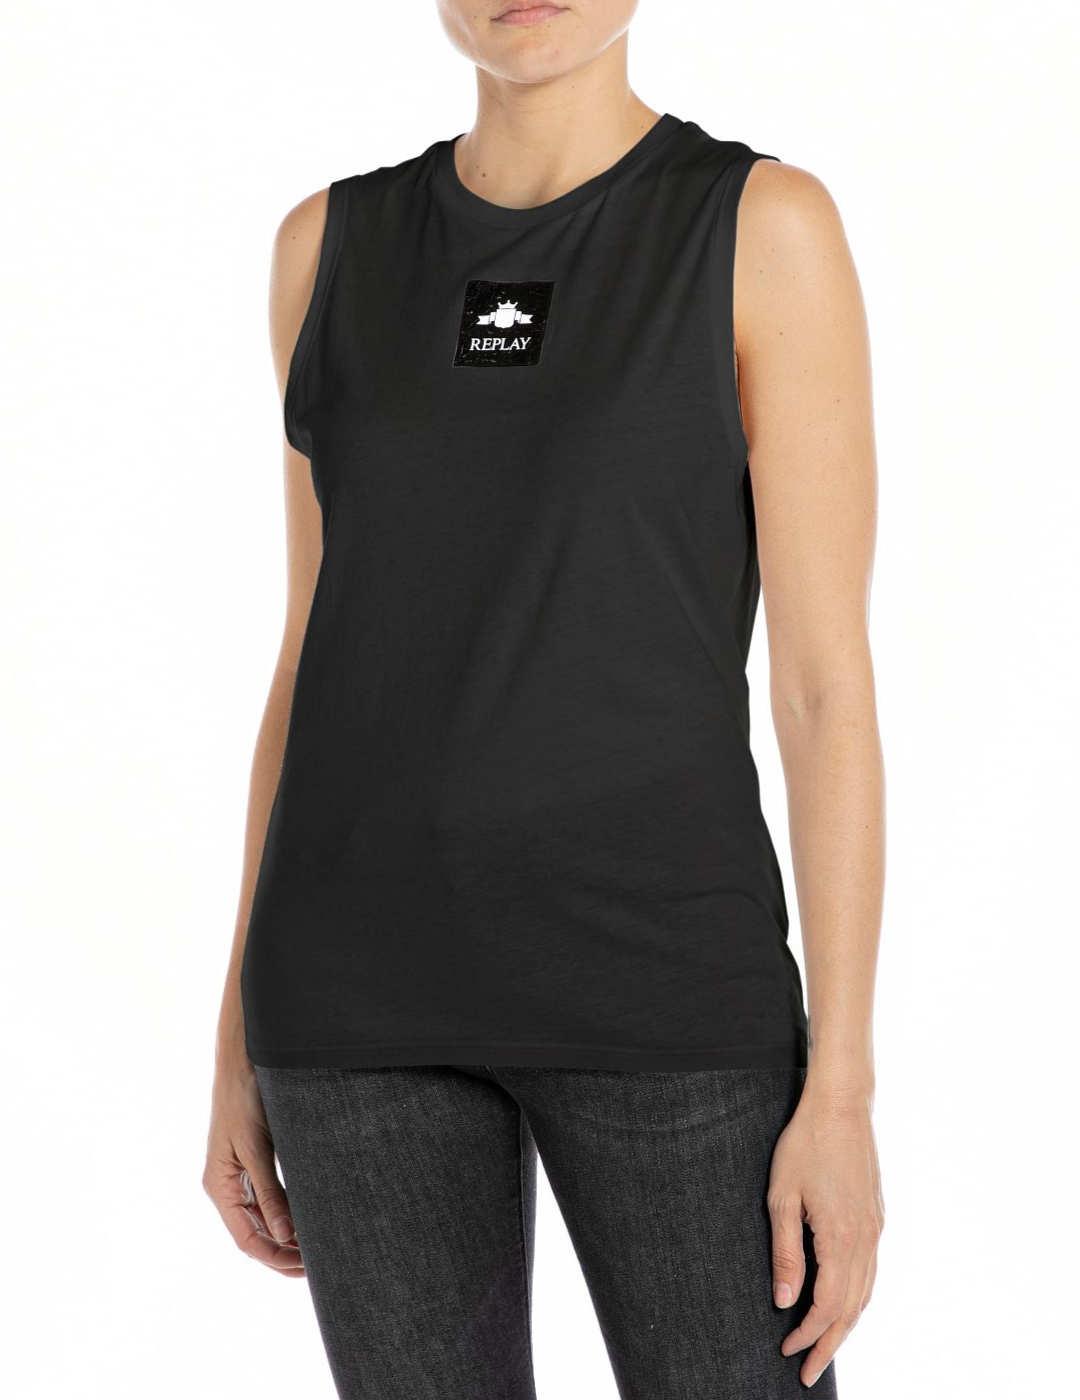 Camiseta Replay negro Regulat sin mangas para mujer